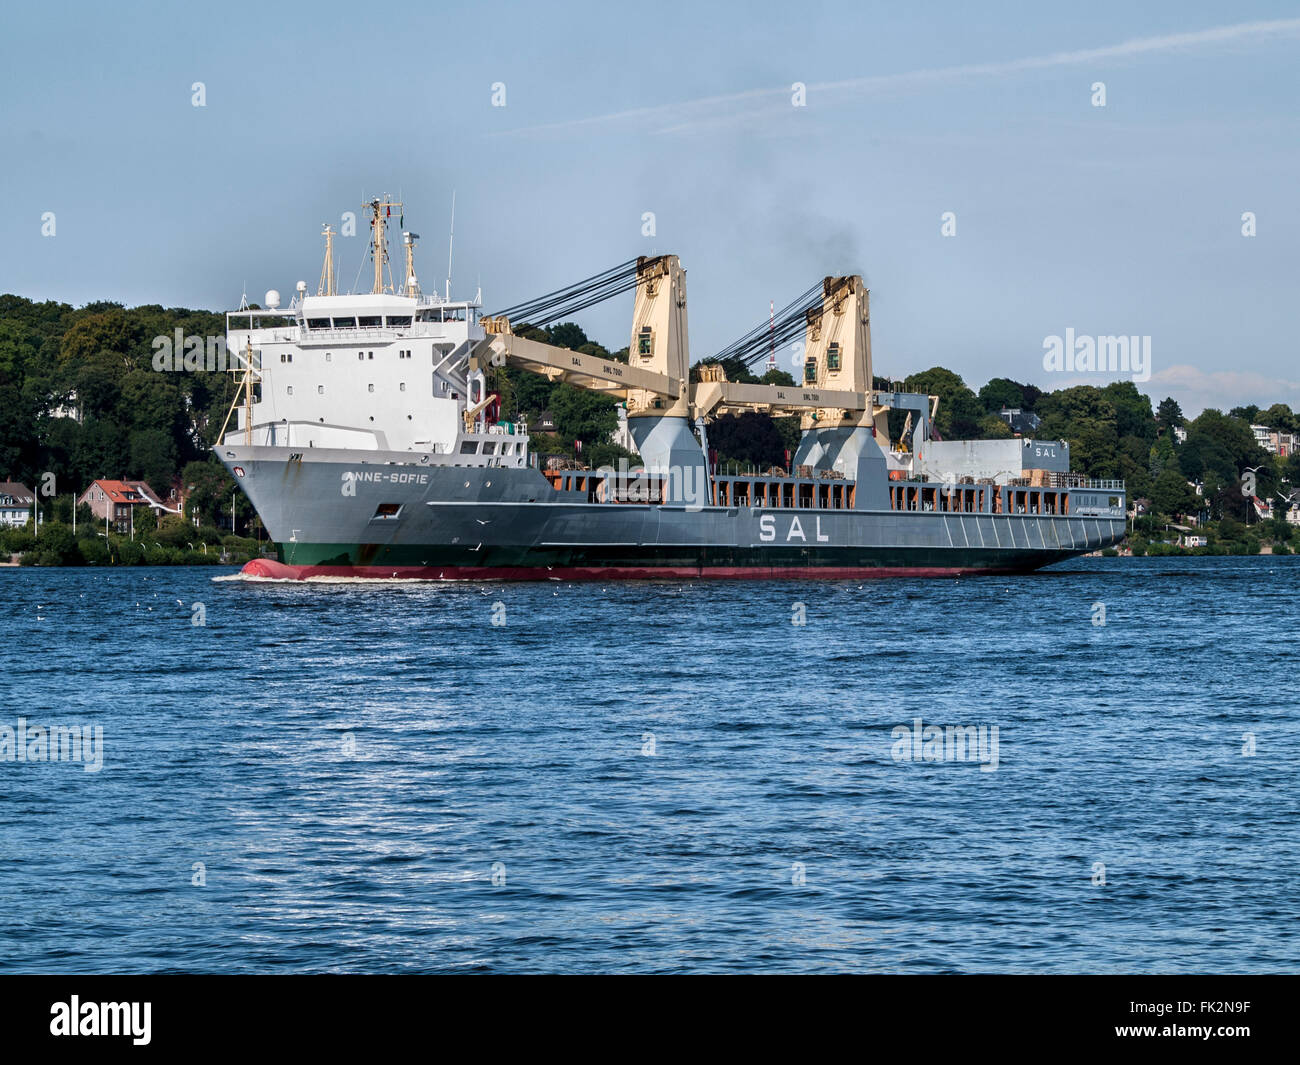 Mehrzweck-Schiff Anne-Sofie an der Elbe ausgehende aus dem Hafen Hamburg, Deutschland. Stockfoto